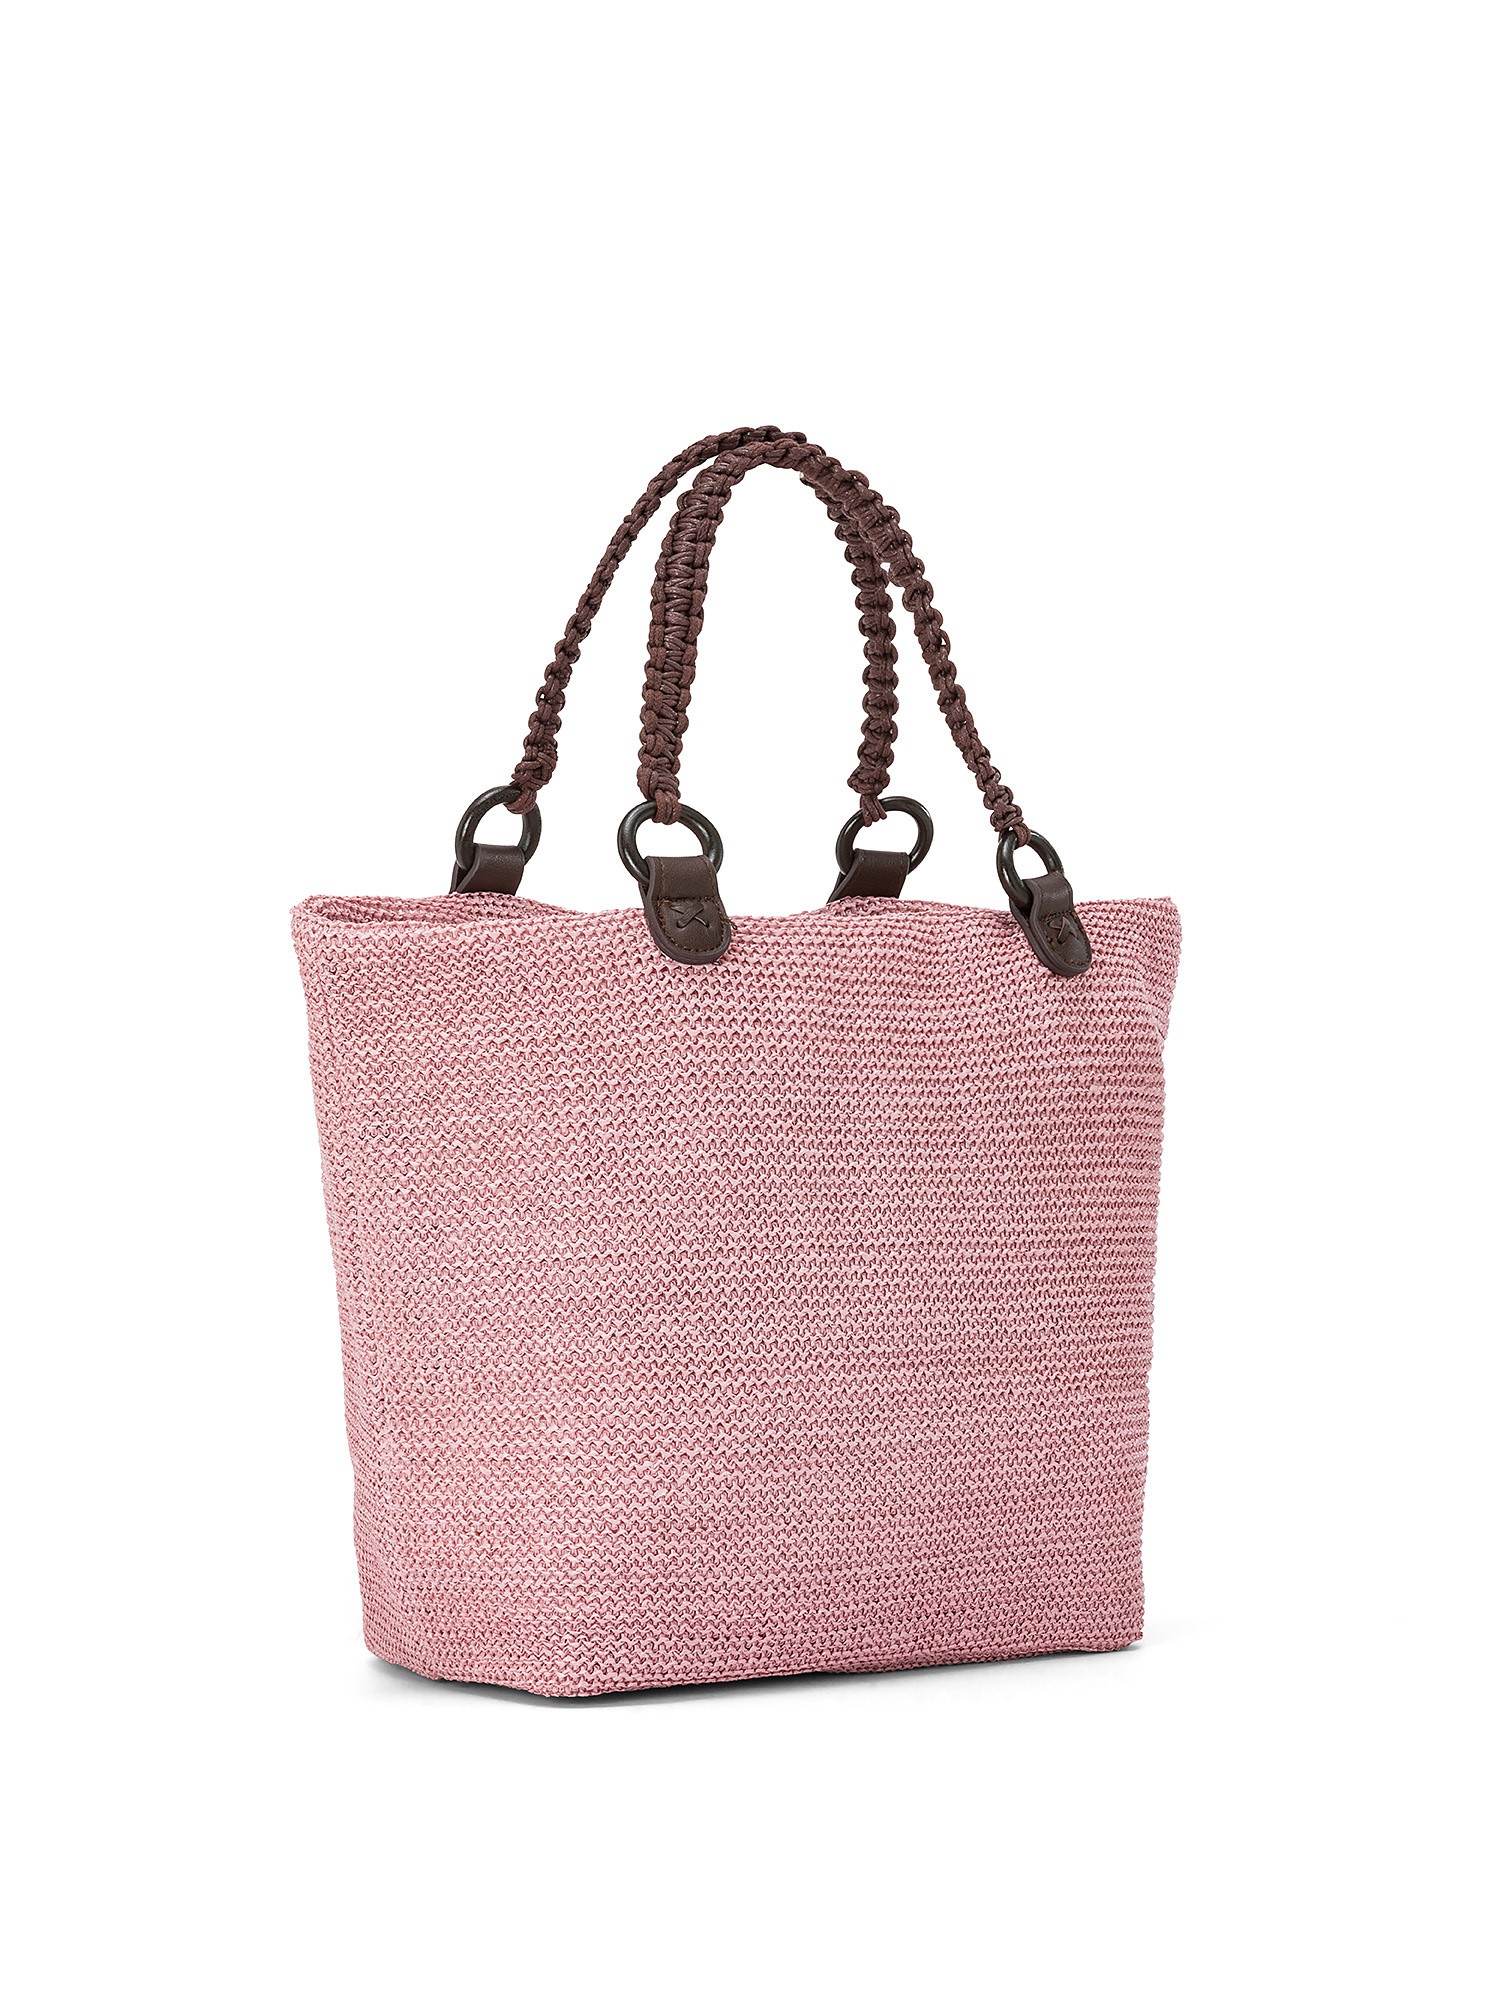 Koan - Shopping bag, Pink, large image number 1